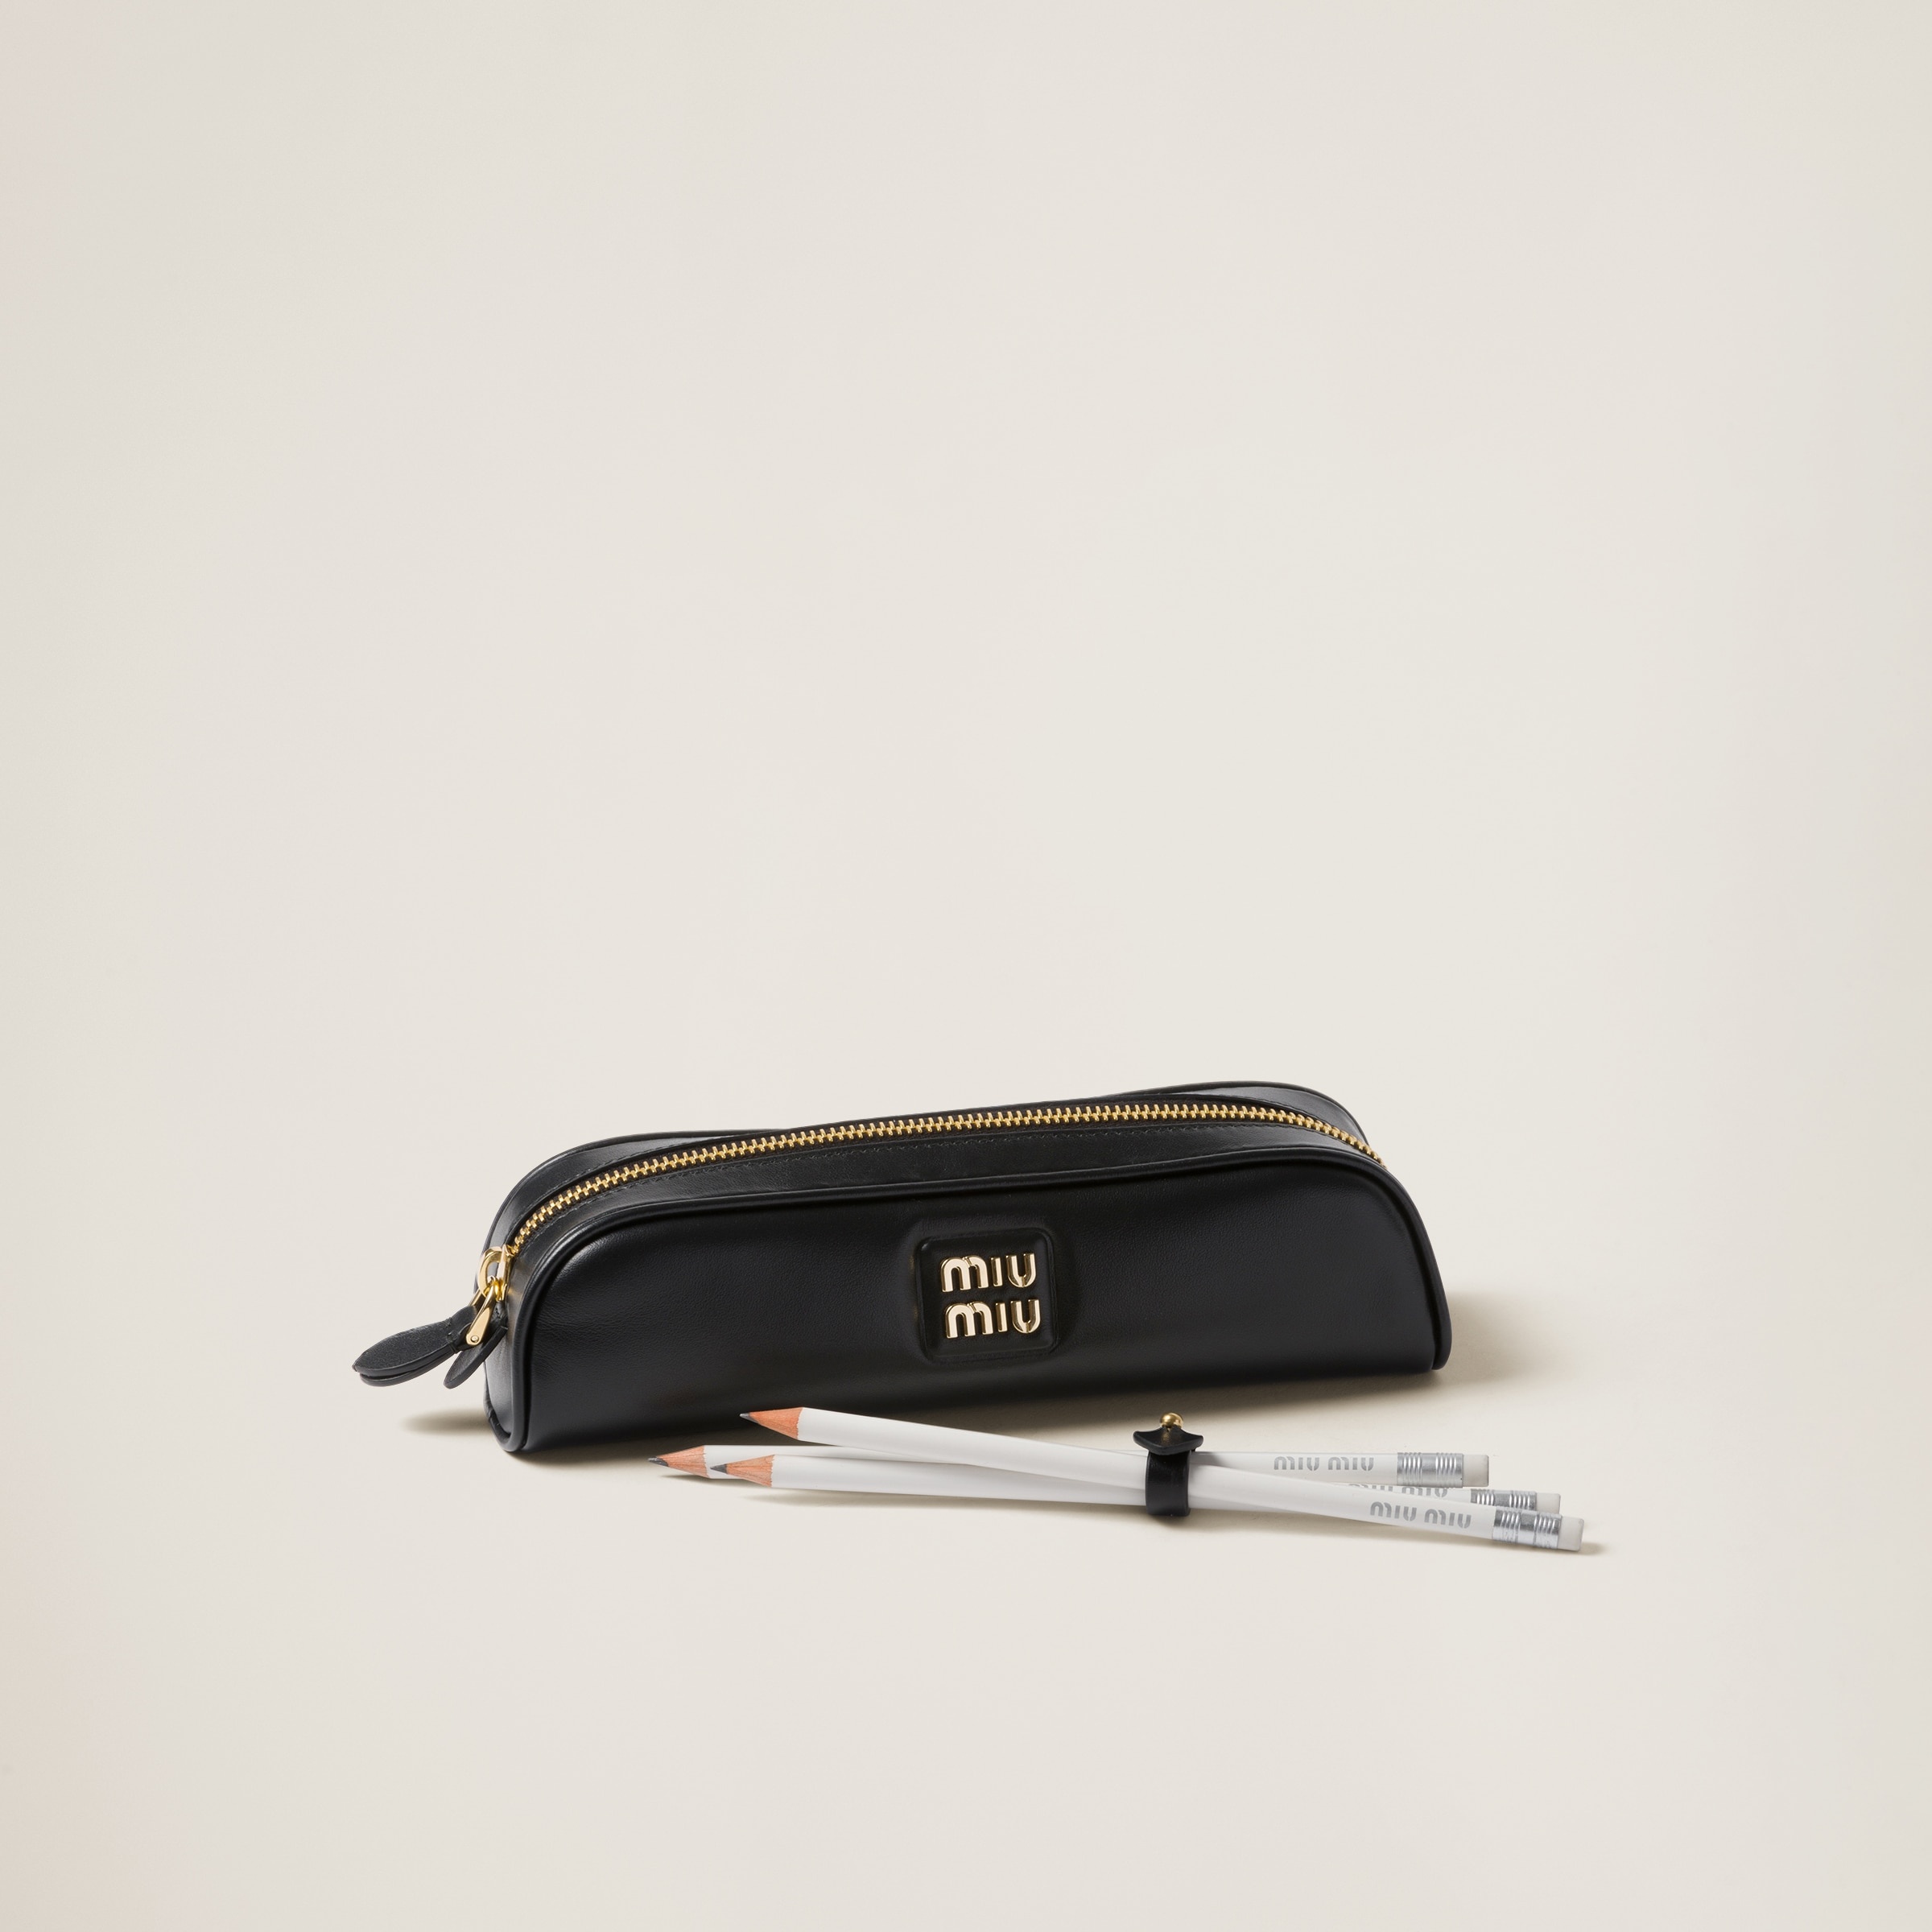 Leather pencil case - 4